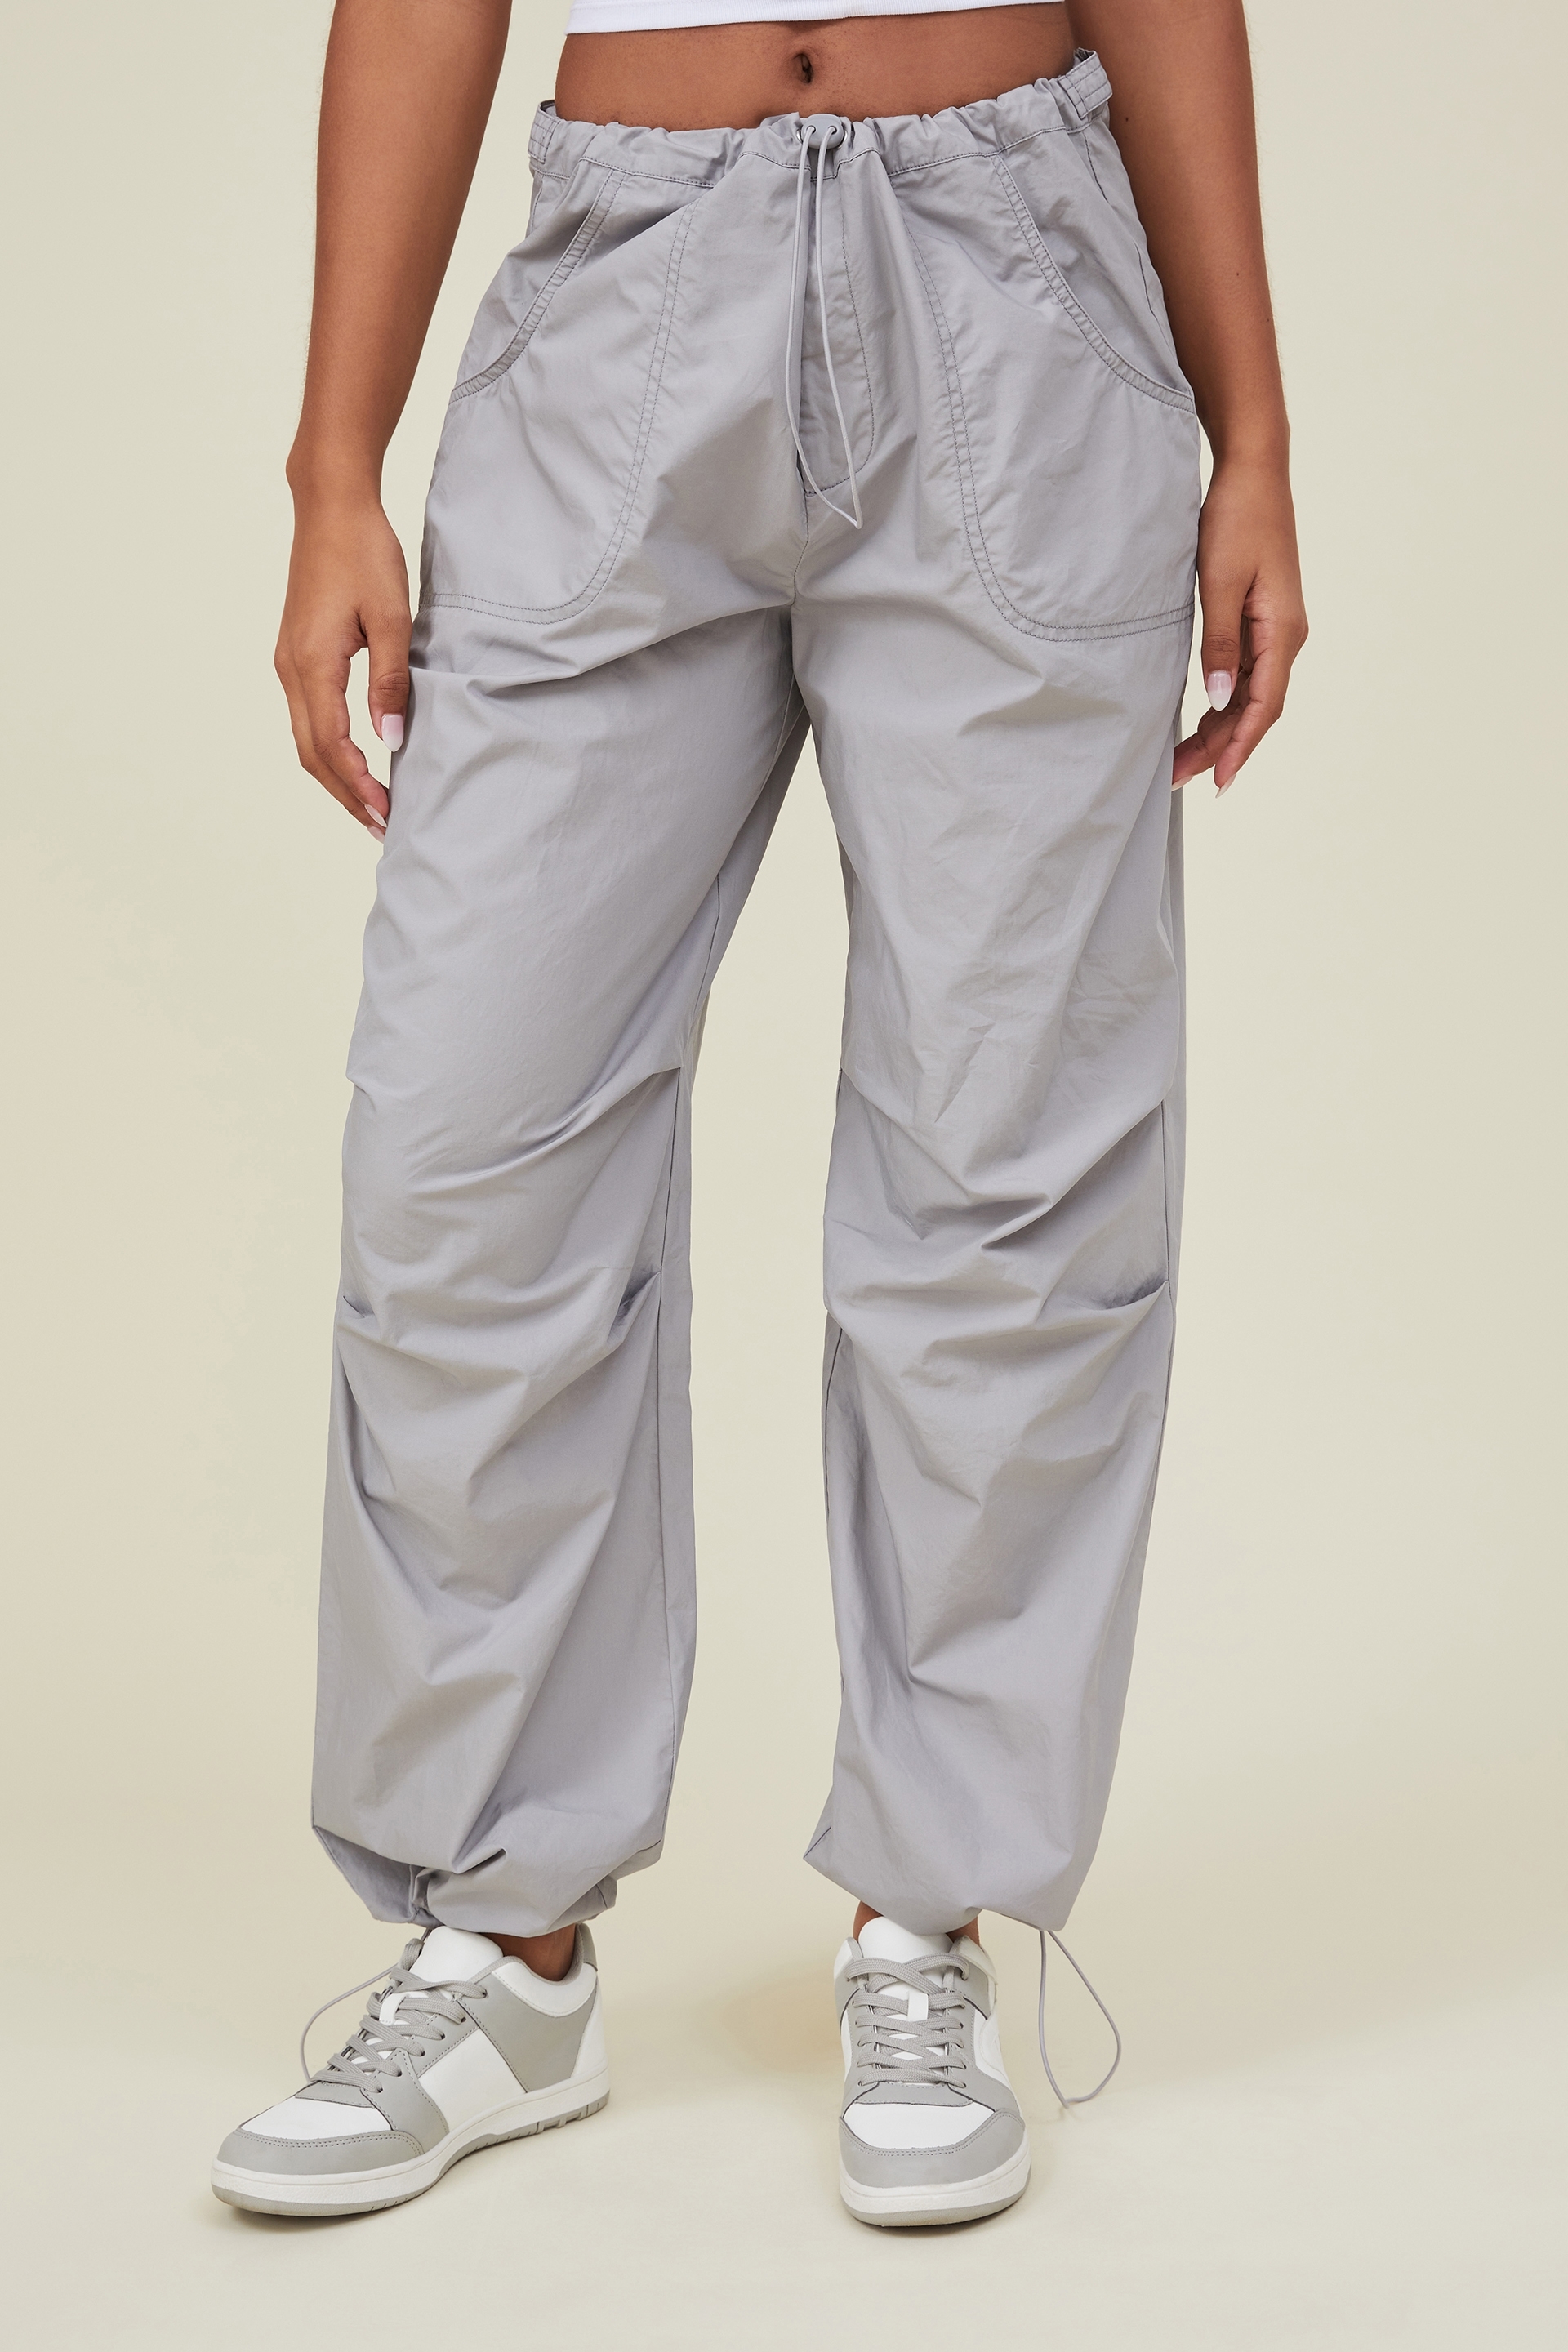 cotton on jordan oversized pleat pants